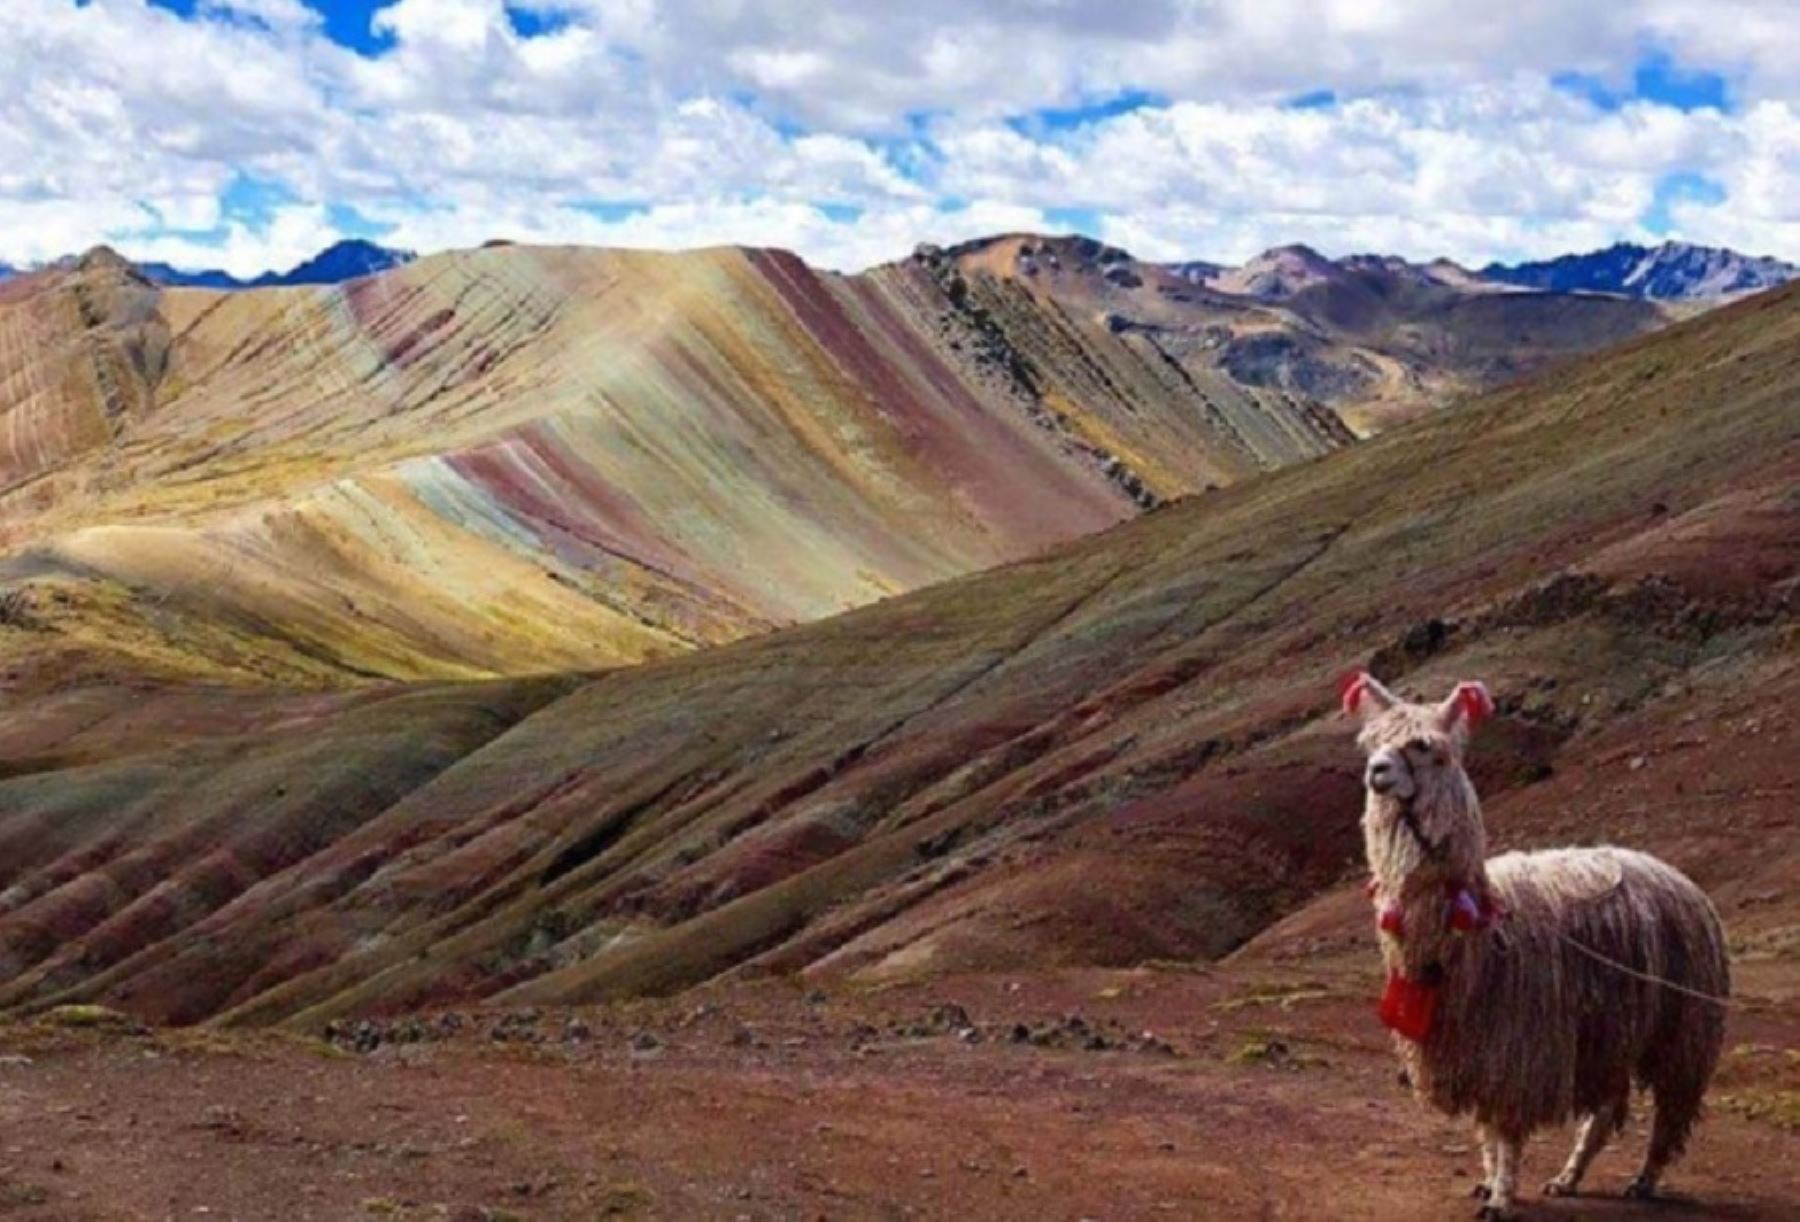 Considerada una de las nuevas joyas turísticas del departamento de Cusco, las montañas de colores de Palccoyo atraen cada vez más el interés de los visitantes y de publicaciones internacionales de viajes por conocer la notable 
belleza de esta parte de la cordillera de los Andes peruanos hasta poco desconocida para el turismo.